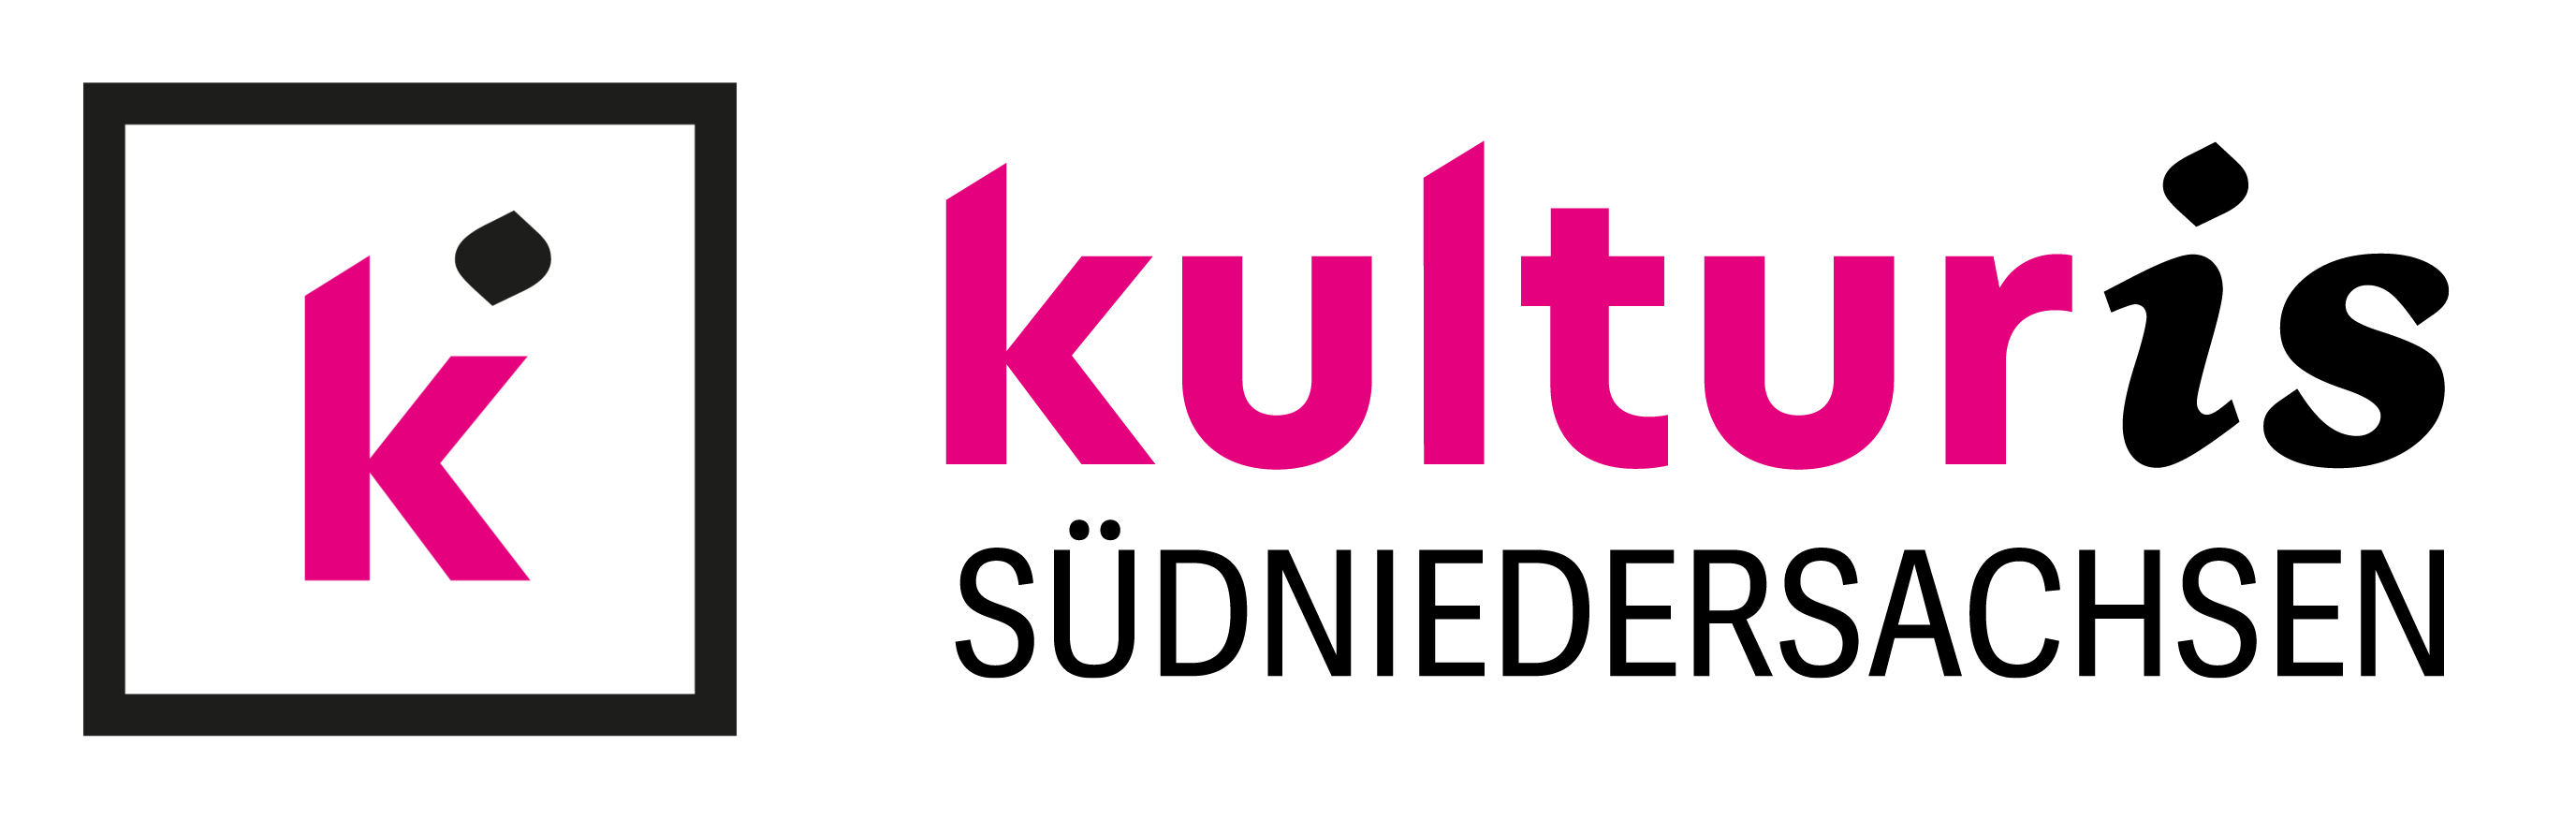 Stilisiertes „k“ in Quadrat, gefolgt von Schriftzug „kulturis“ mit kursiv abgesetztem „is“ und Unterschrift „Südniedersachsen“